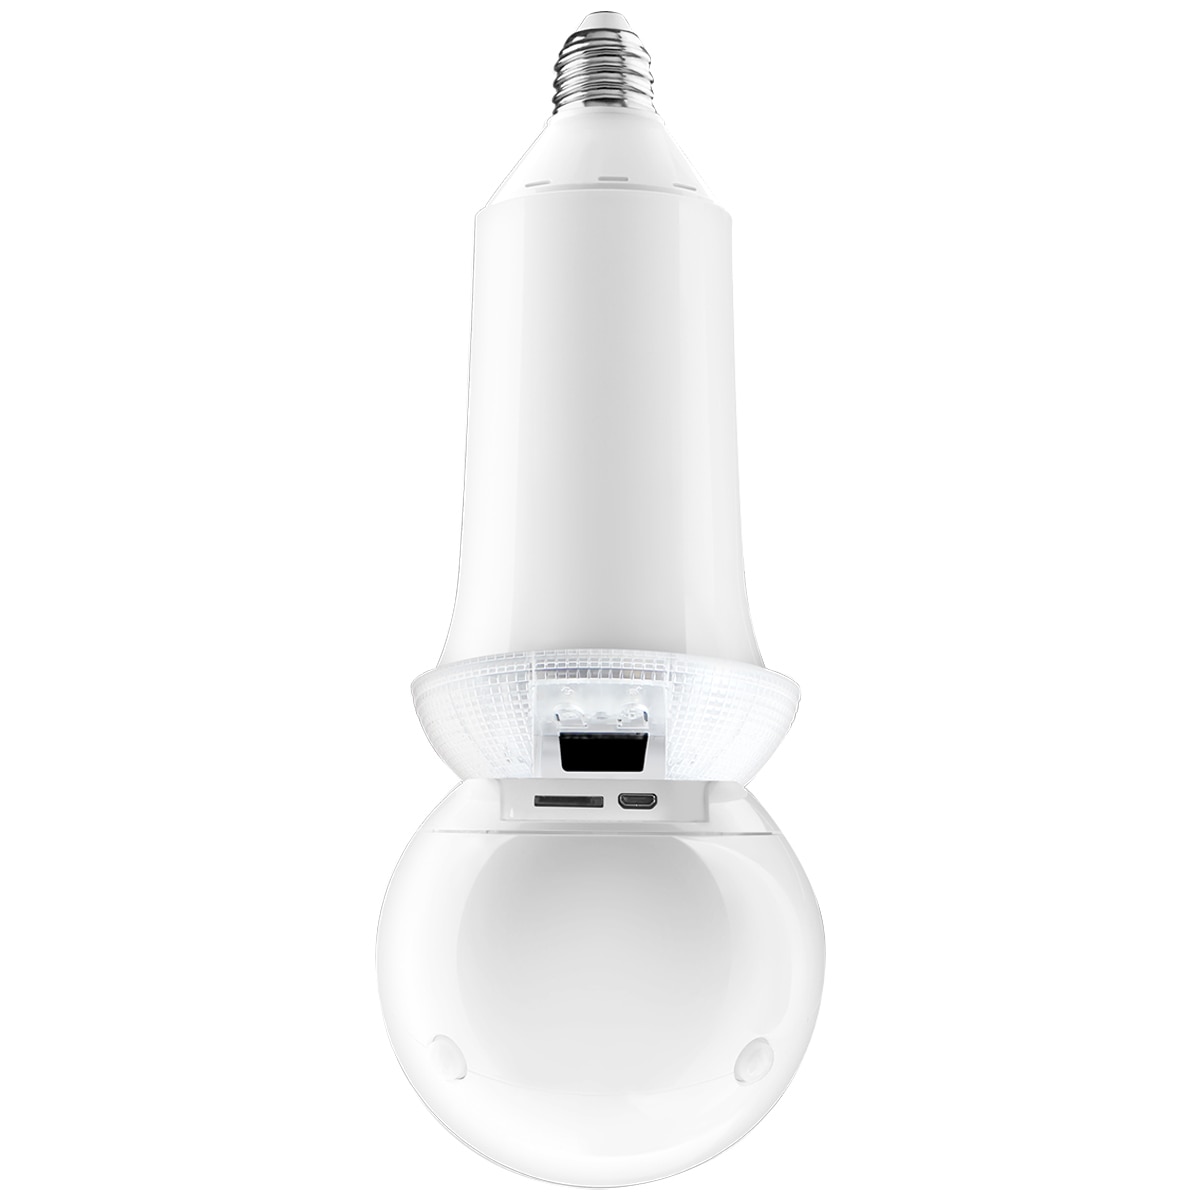 Zeus Light Bulb Camera